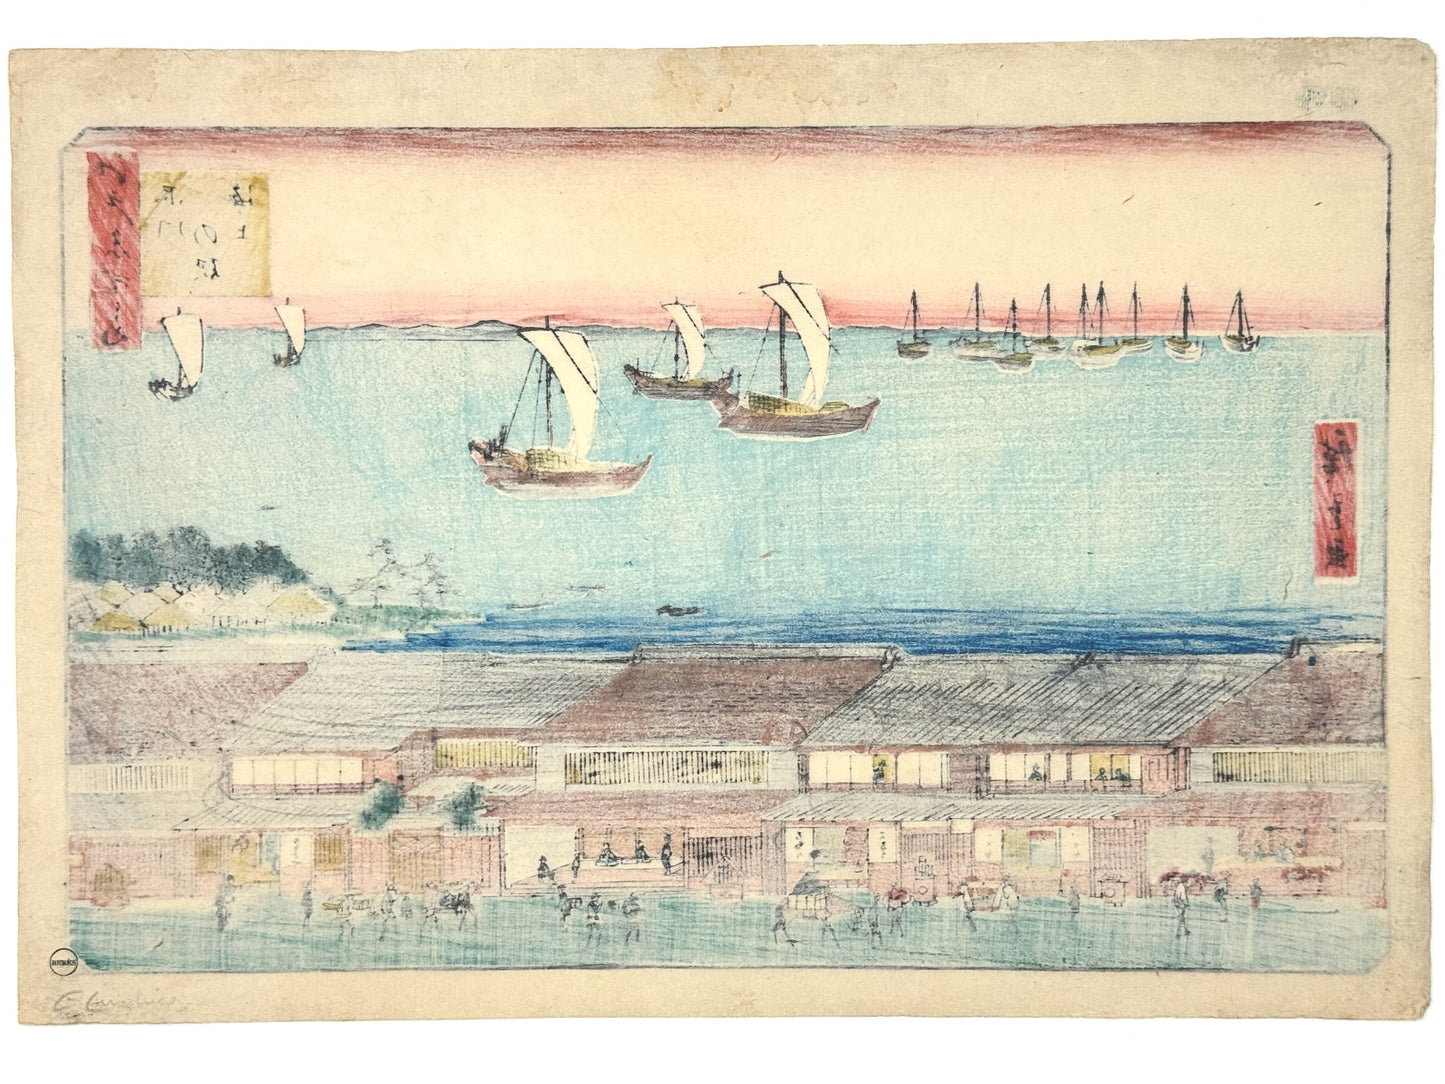 estampe japonaise Hiroshige edo meisho vue de la mer depuis station du tokaido, paysage, bateaux voiles déployées, auberges scène de vie, dos estampe